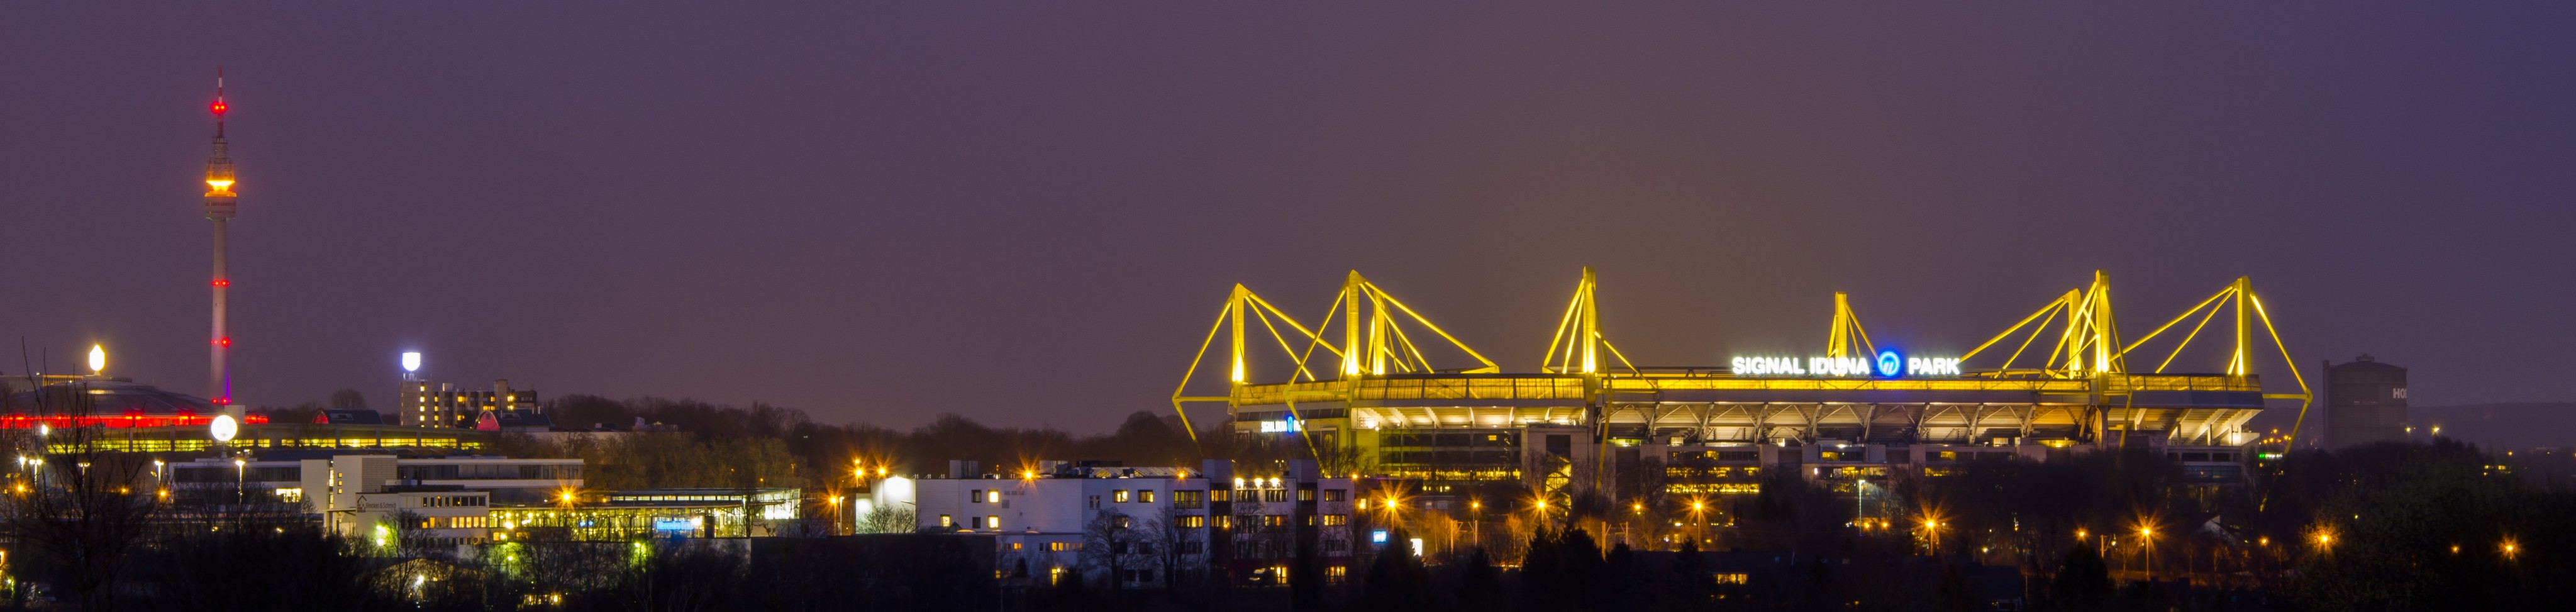 Die Dortmunder Skyline mit bestem Blick auf den Signal Iduna Park - der Heim-Spielstätte des BVB. von Nils Dinkel